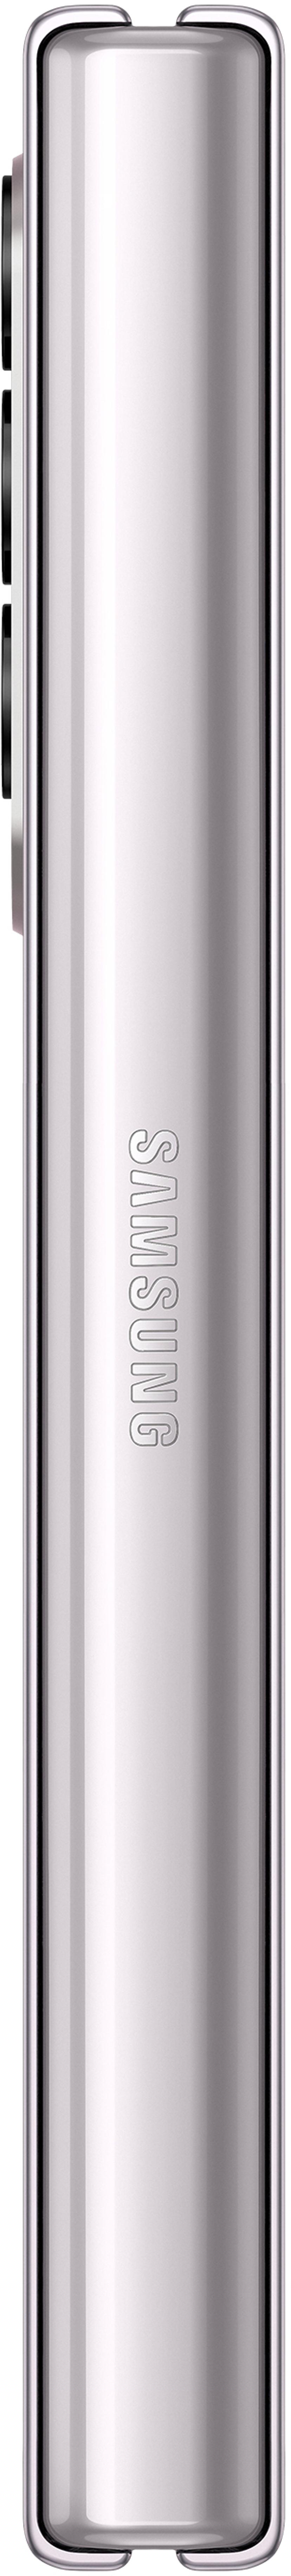 Samsung Galaxy Z Fold3 512GB Dual-SIM Fantomsilver